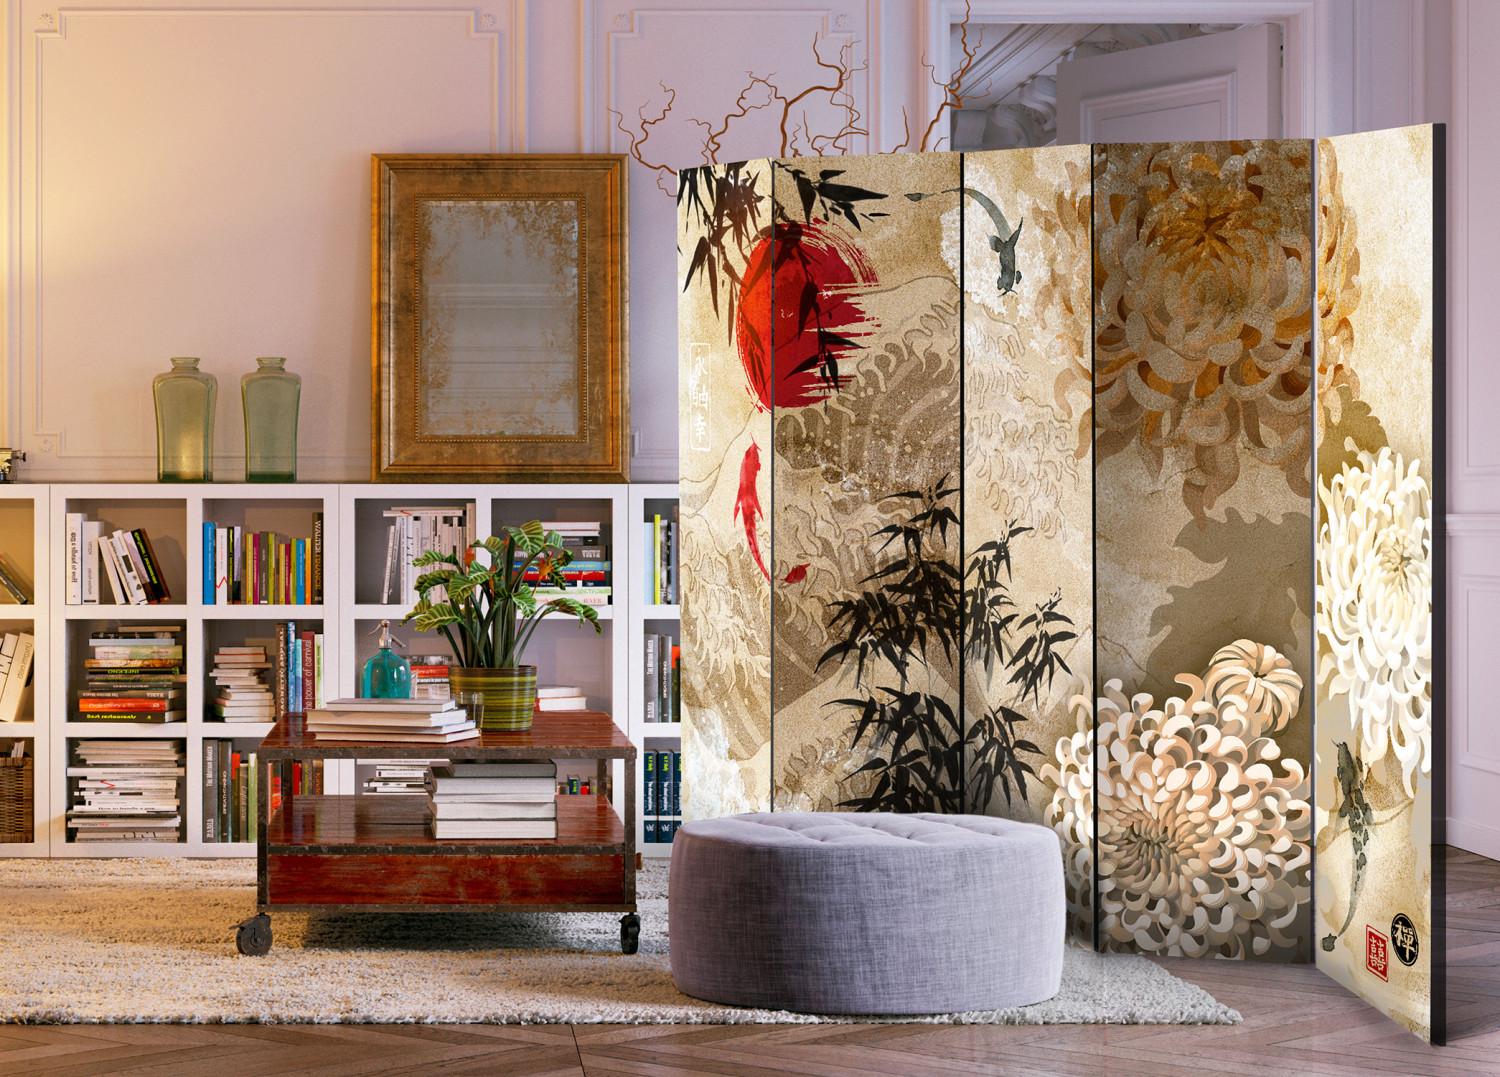 Biombo decorativo Danza Piscis II - textura beige motivos orientales peces flores